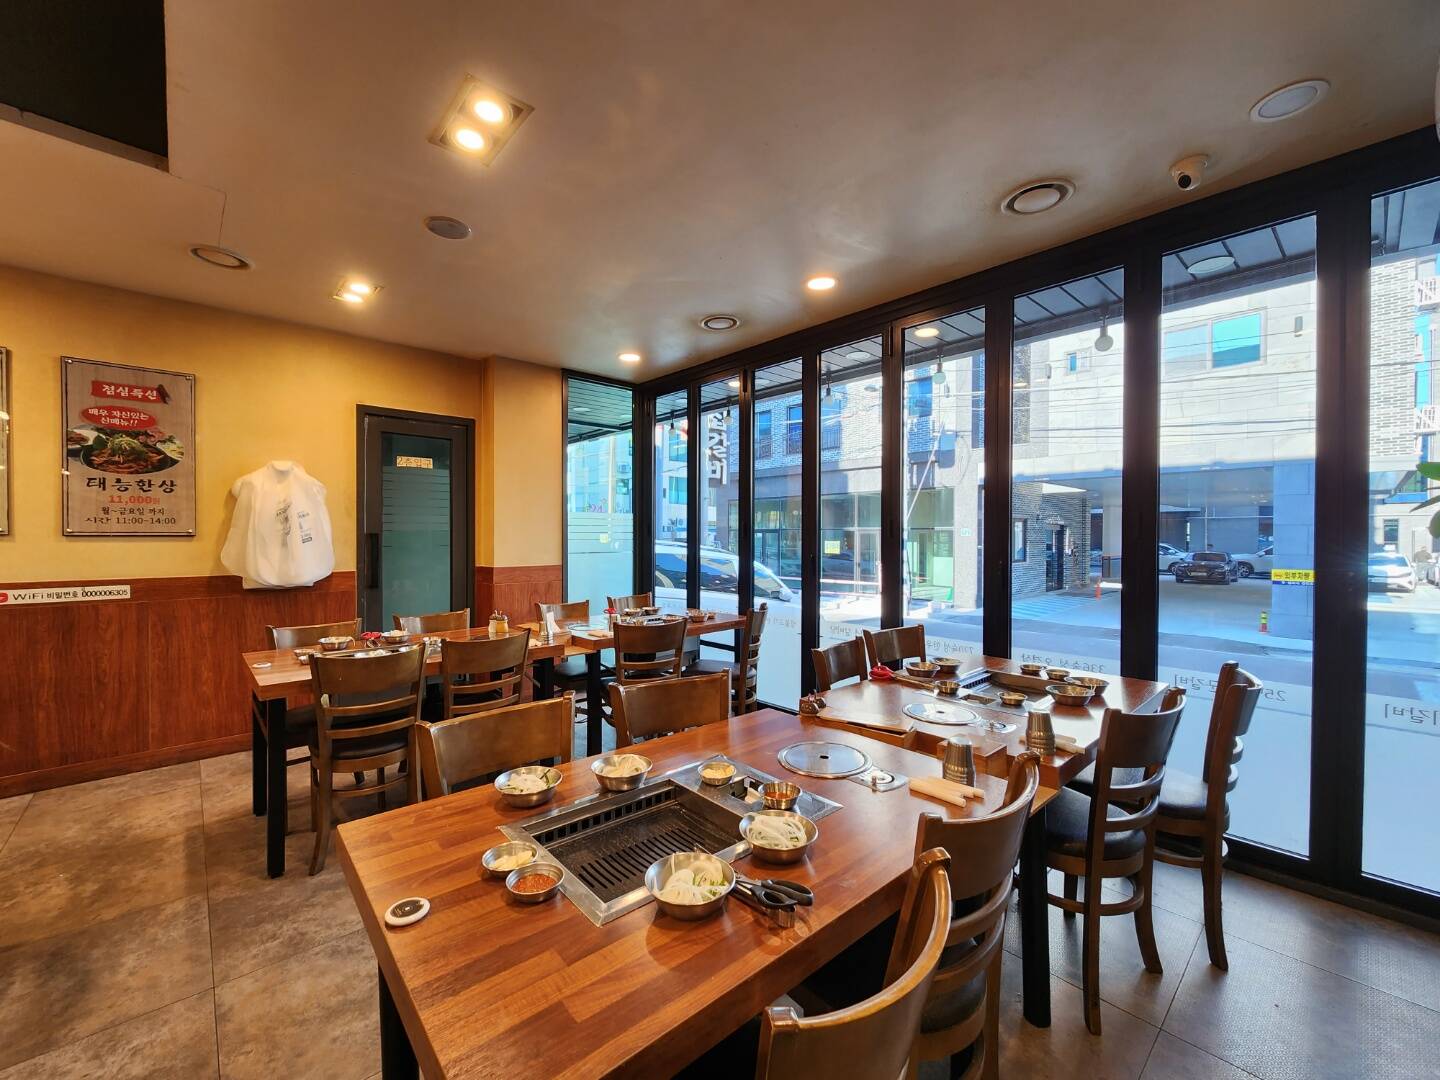 따뜻하고 현대적인 느낌의 갈비 맛집 대형 식당